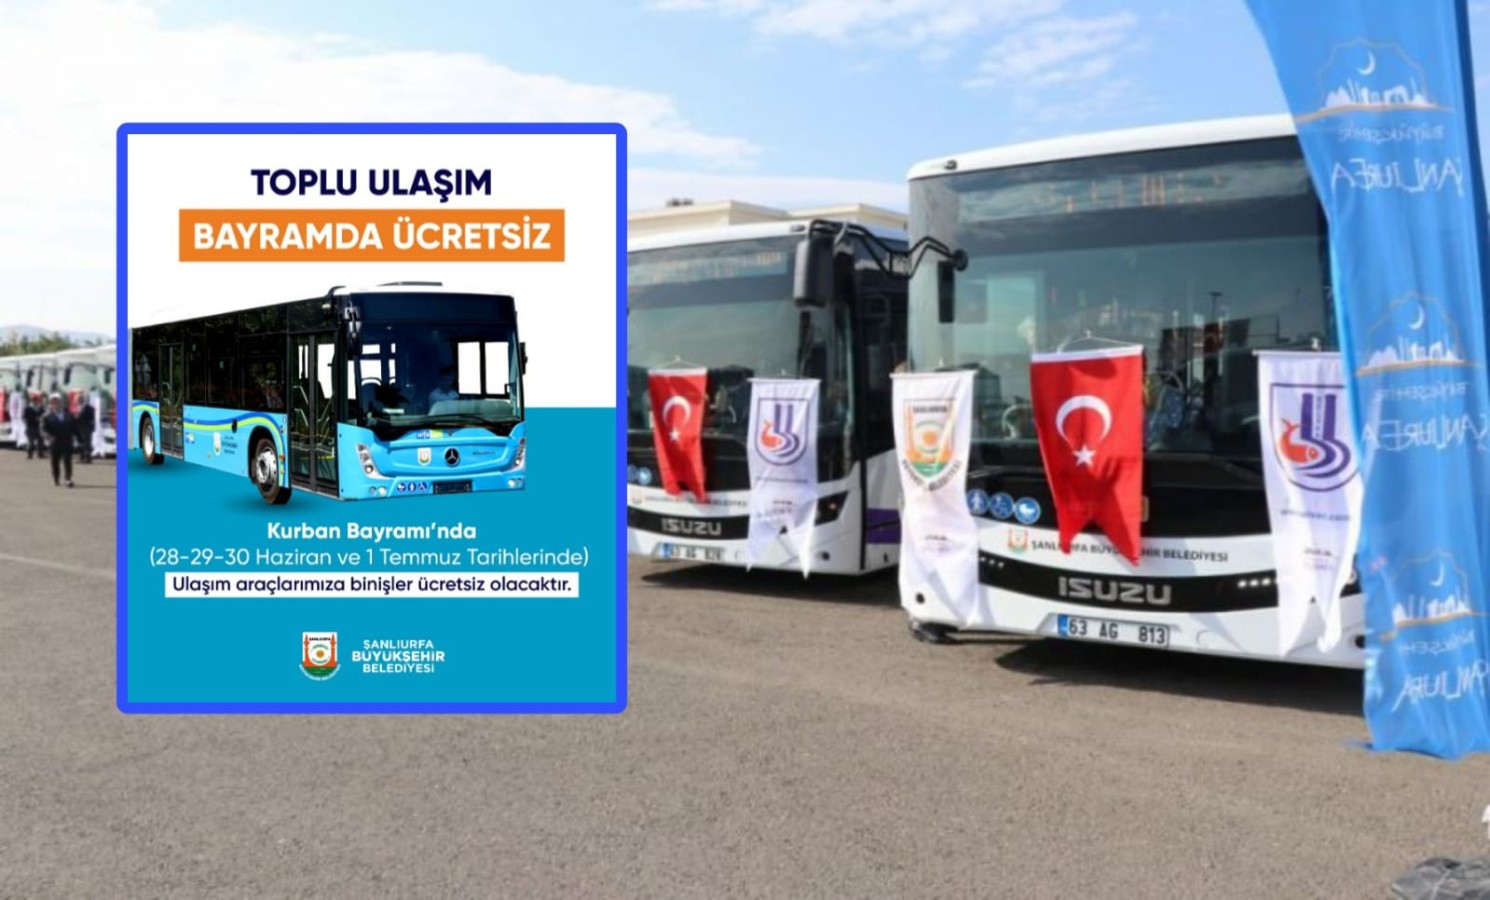 Urfa’da Kurban Bayramı’nda otobüsler ücretsiz;